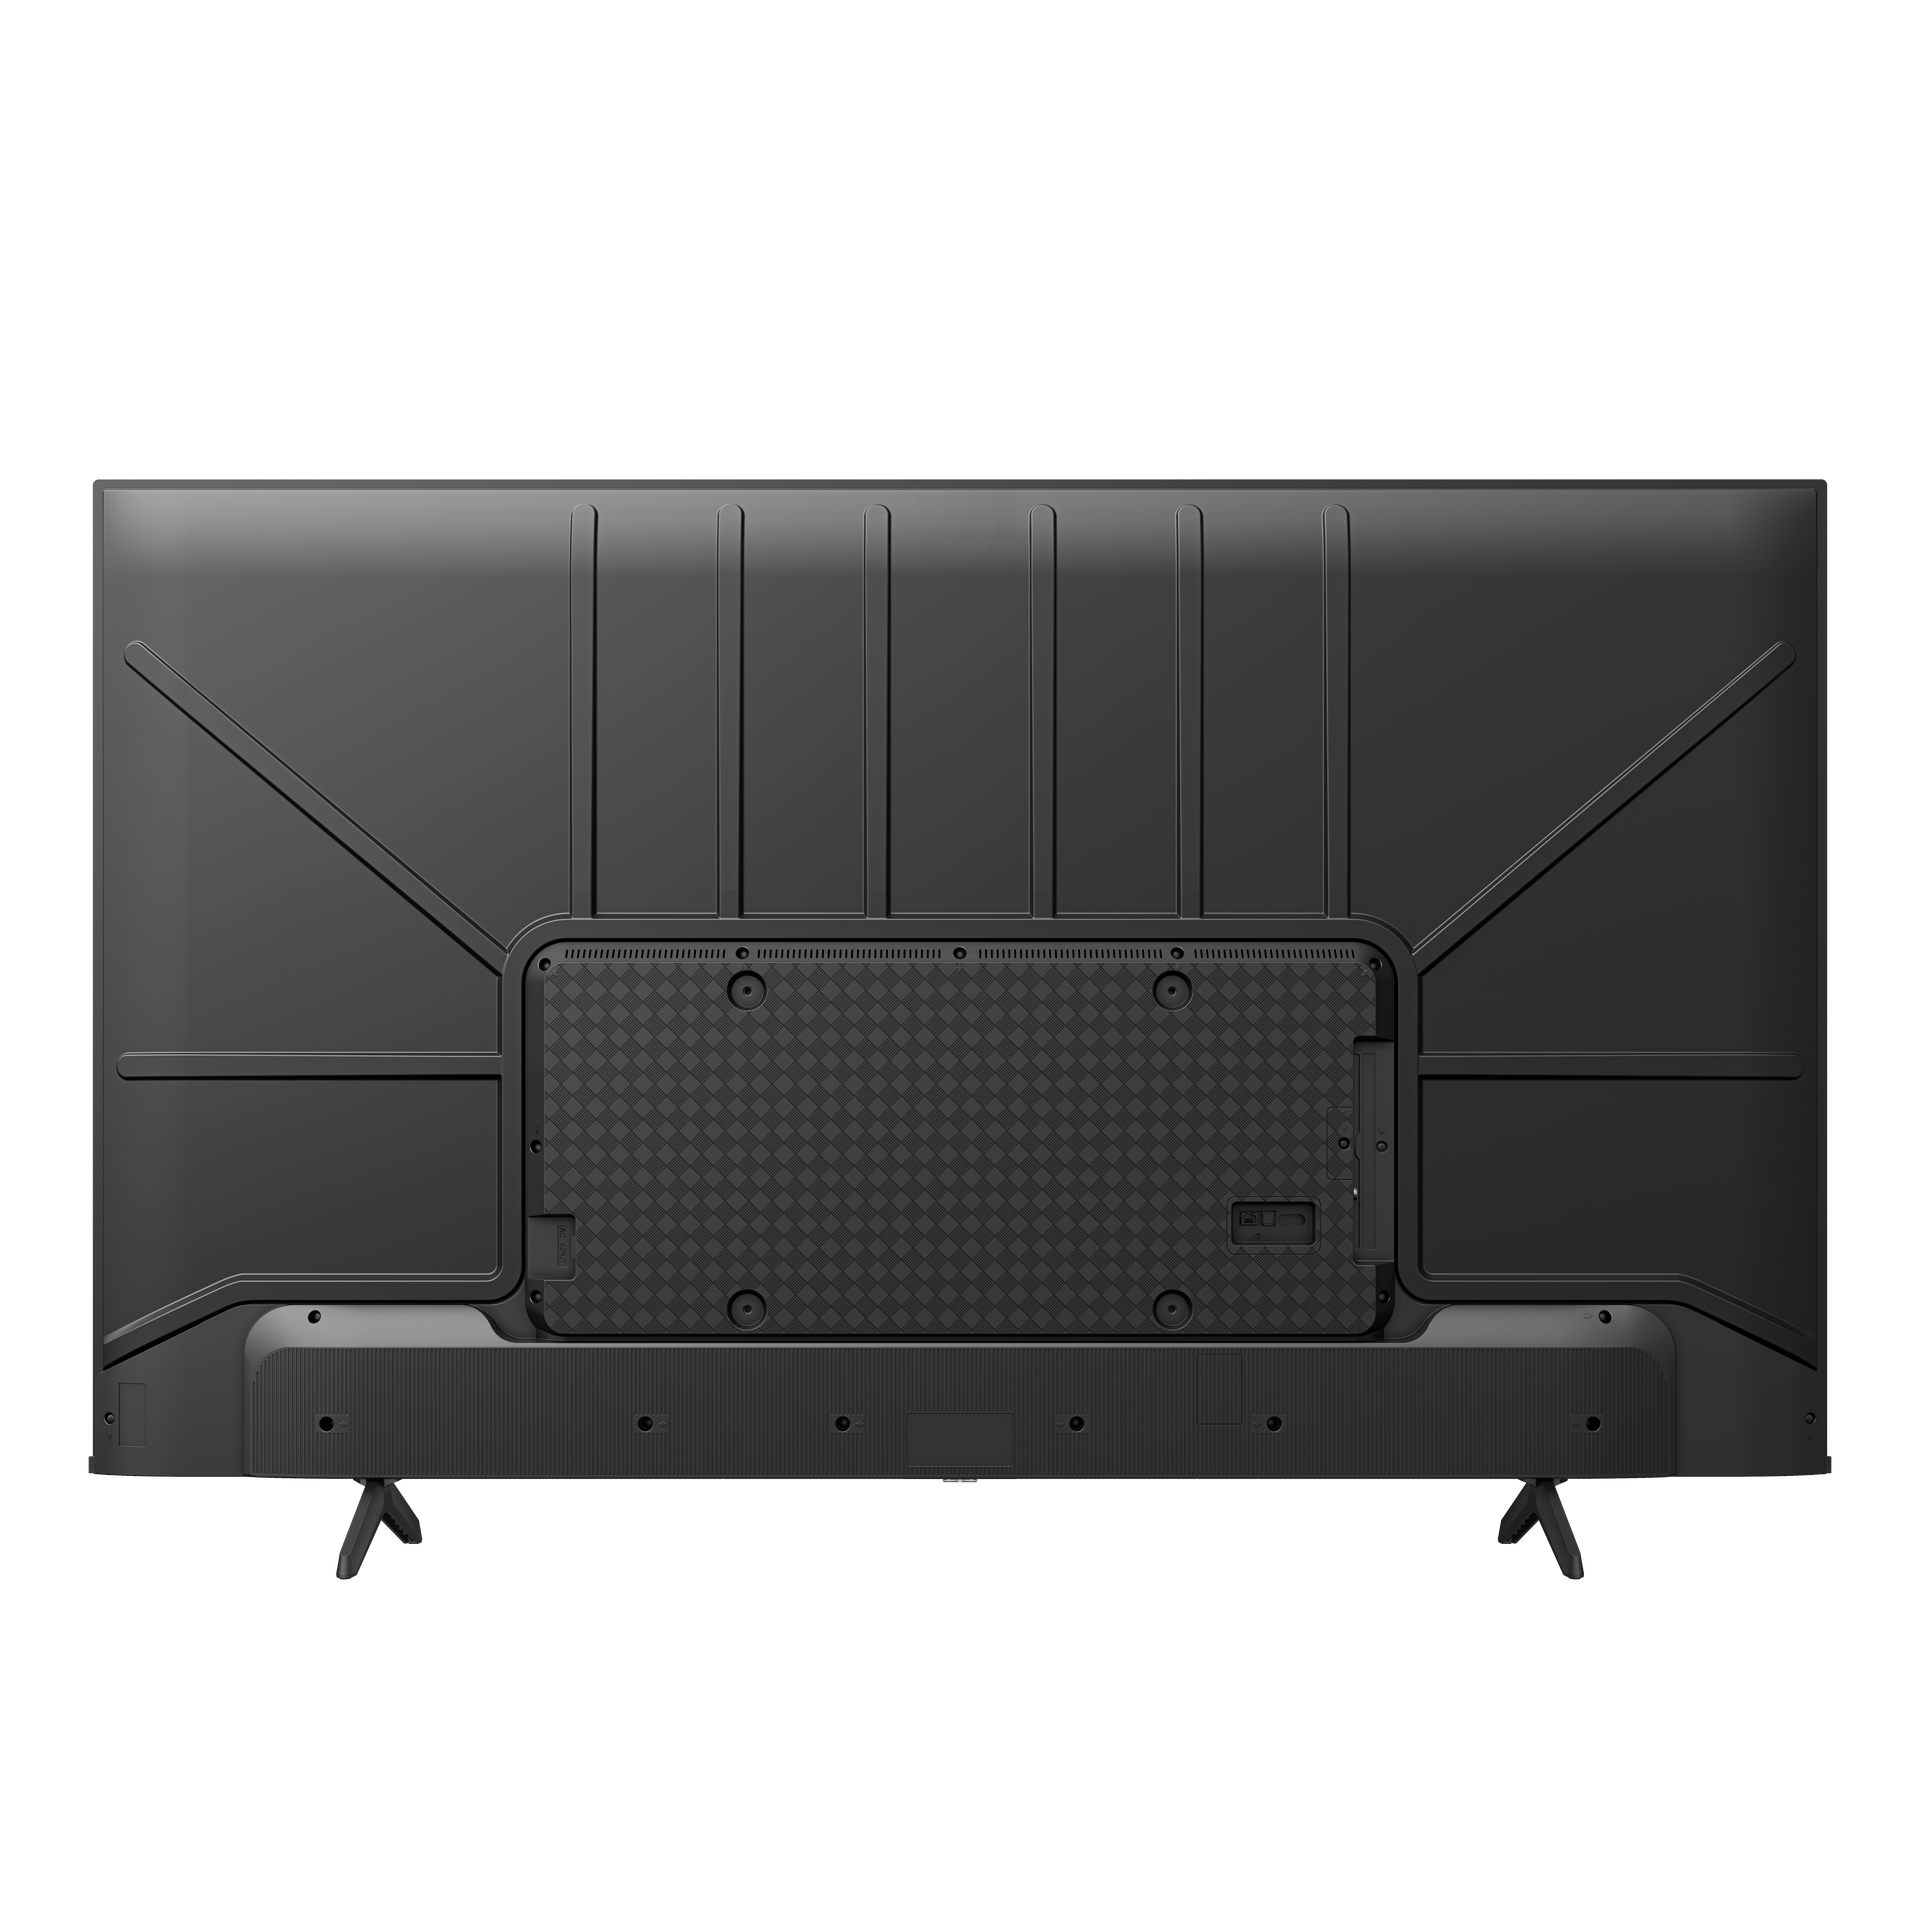 Hisense 43” UHD Smart TV – 43A6K - Wakefords Home Store